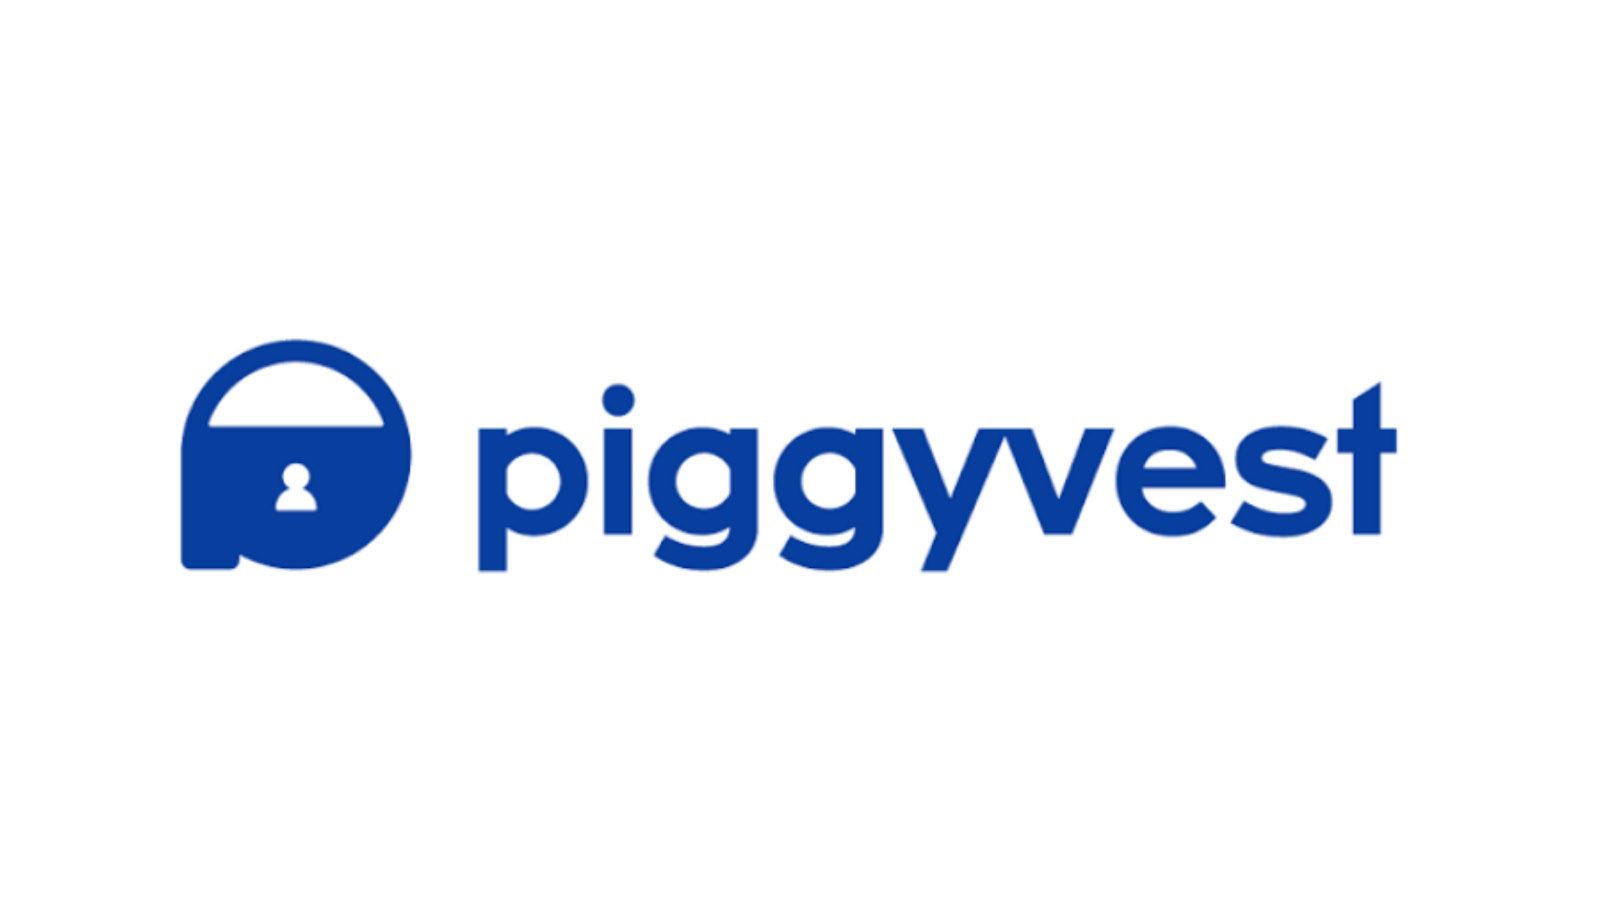 A logo of the Piggyvest app